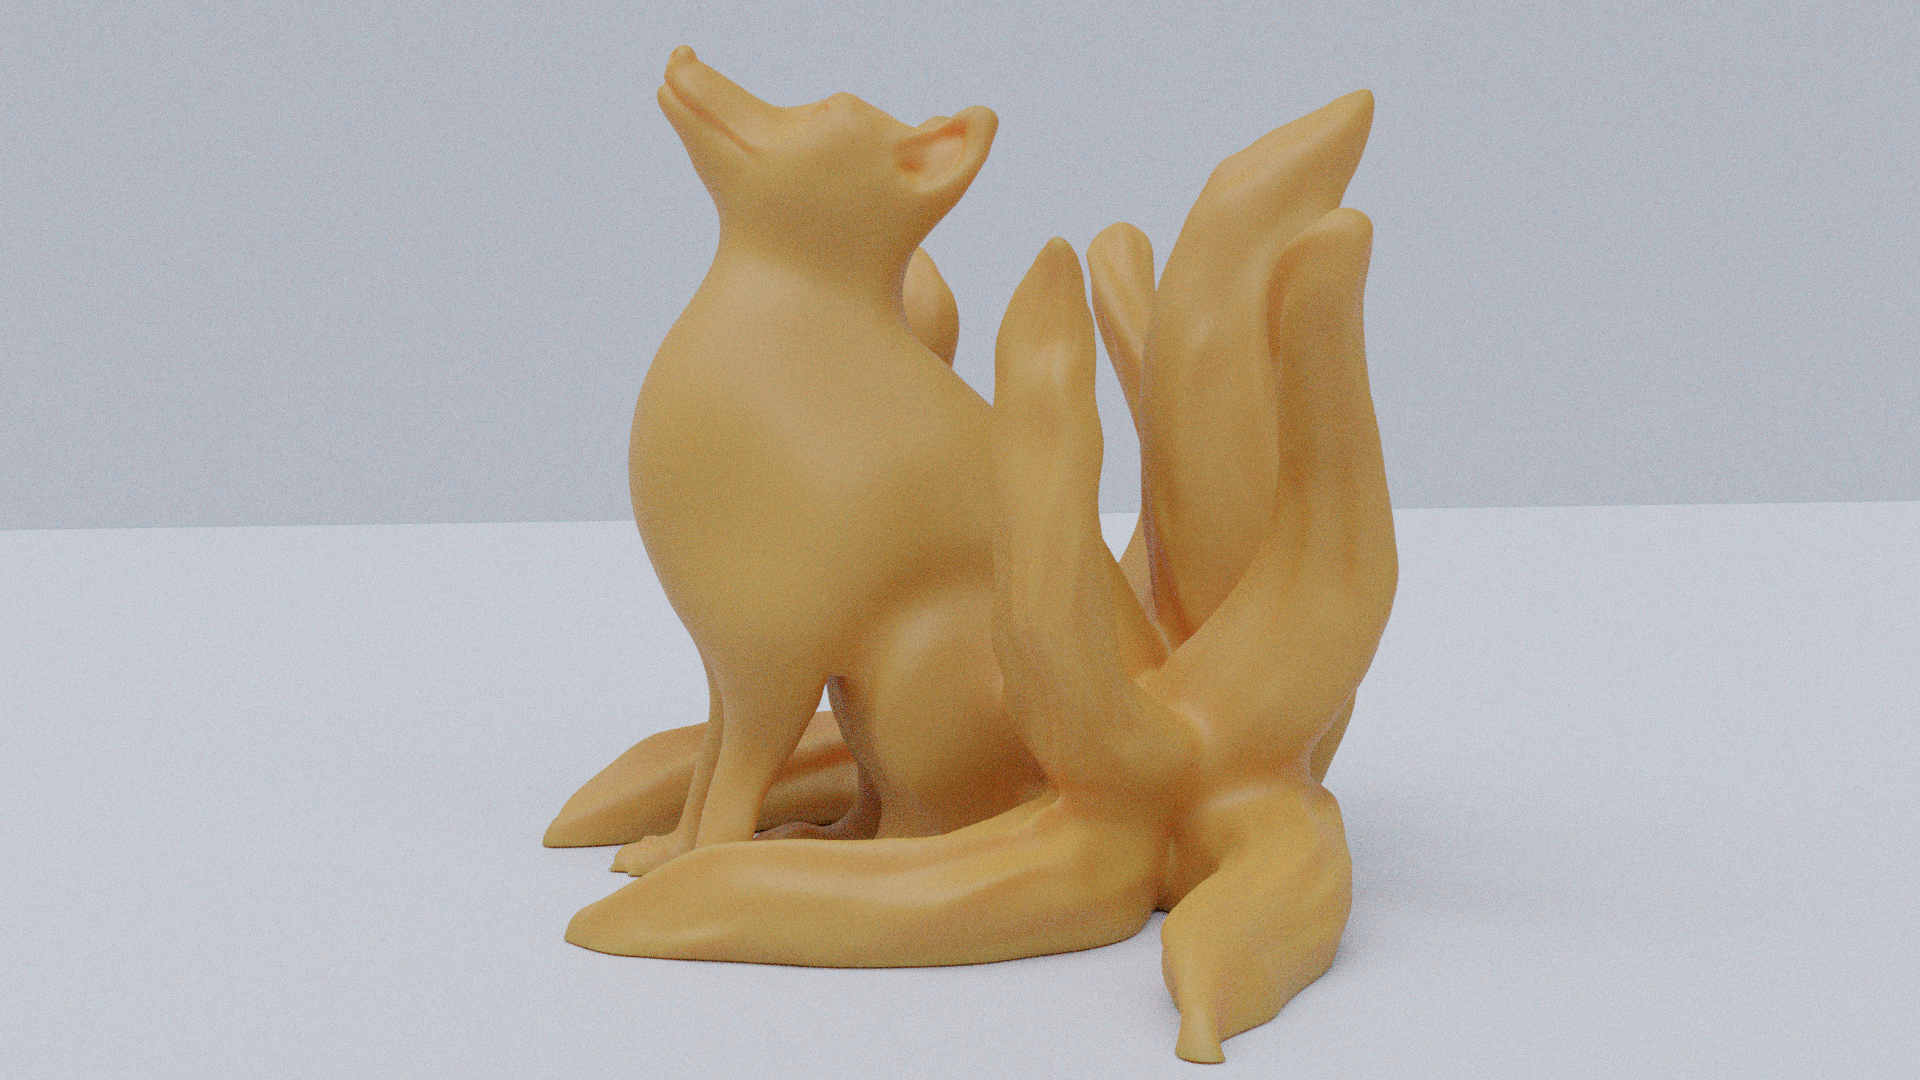 Kitsune (Japanese nine-tailed fox)